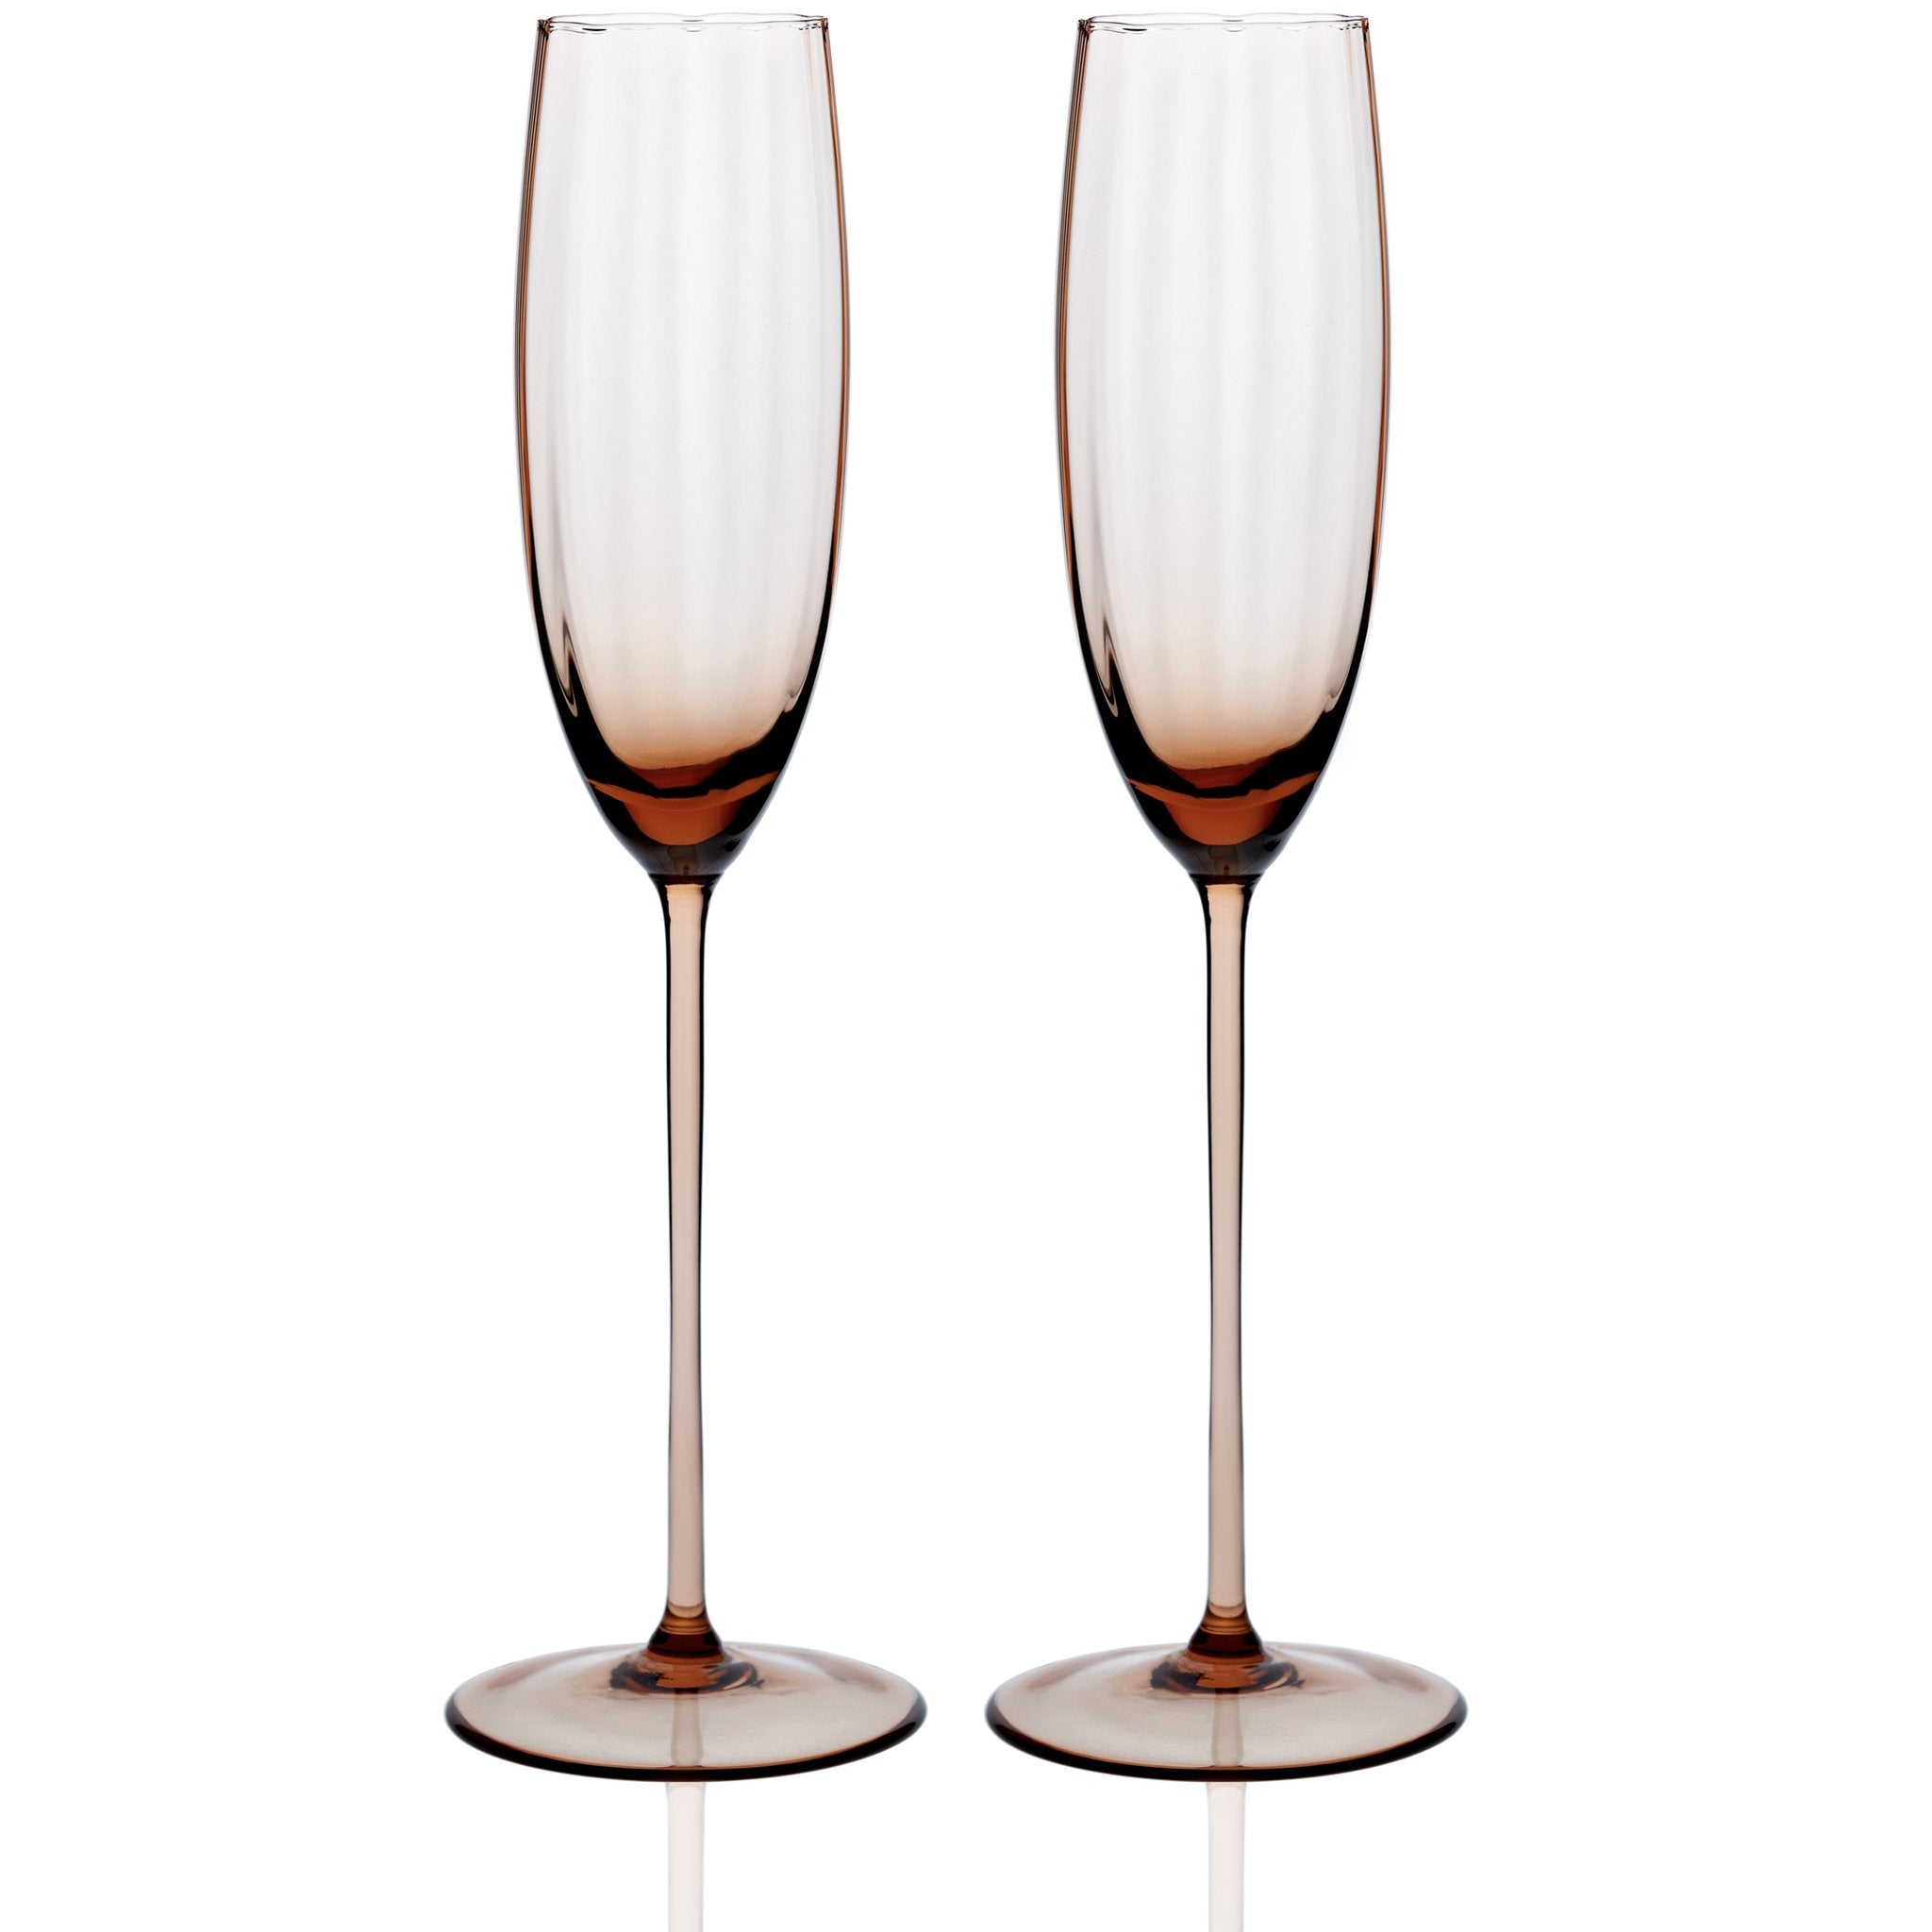 Quinn Champagne Flute Glasses, Set of 2 - Slowdance